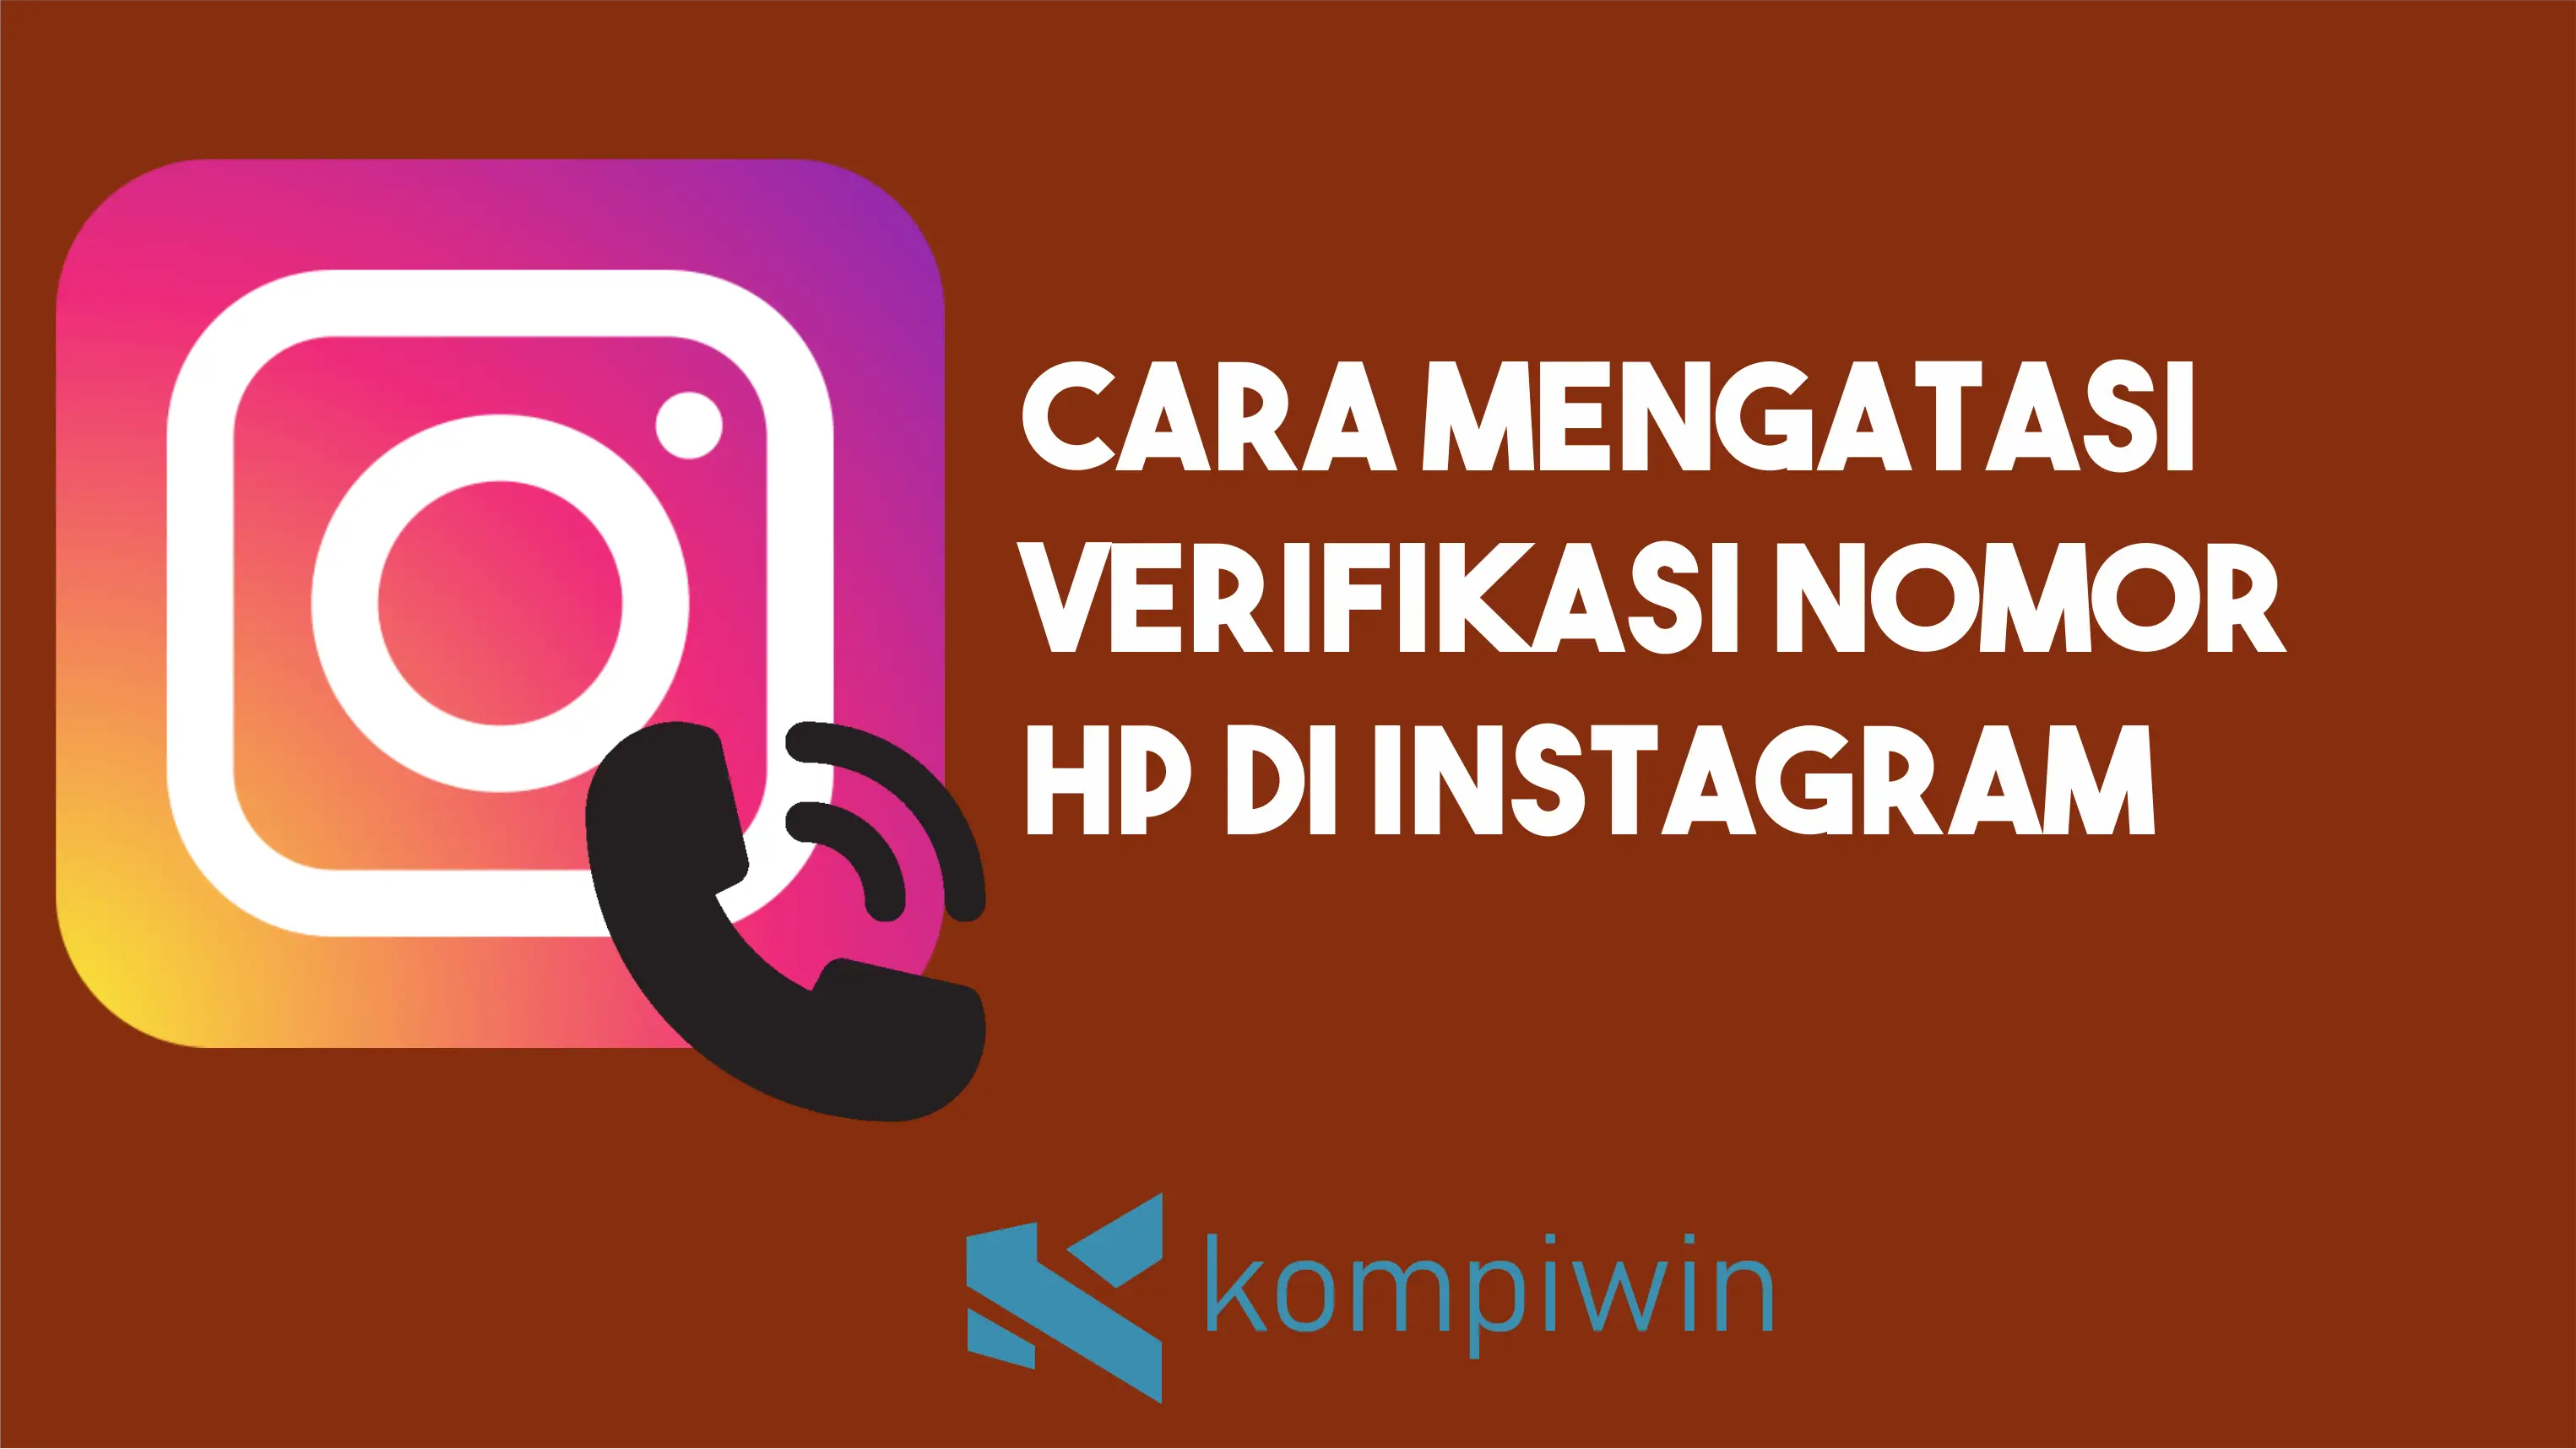 Cara Mengatasi Verifikasi Nomor HP Di Instagram